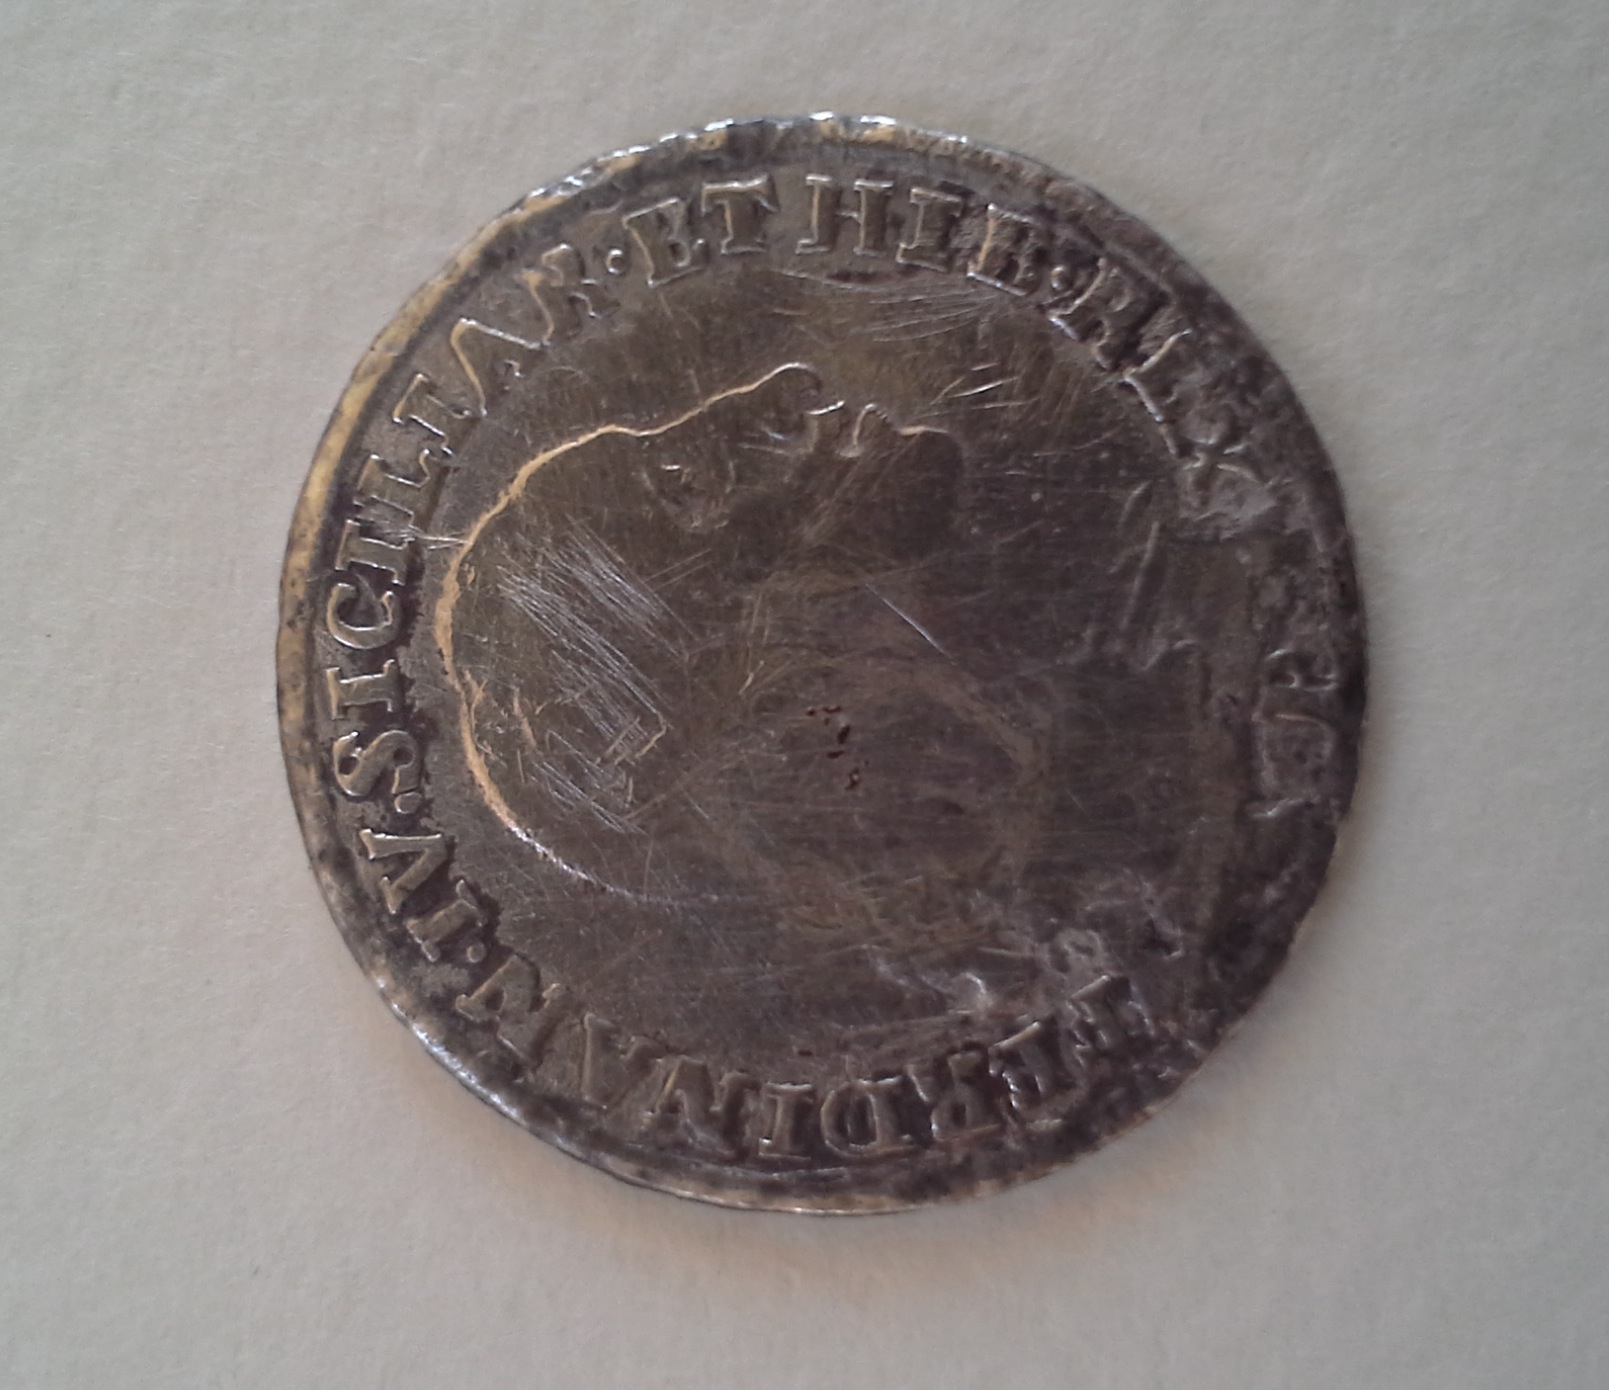  Ritrovato a Punta Secca un Tarì, una moneta d’argento del 1798: risale al periodo di Ferdinando IV